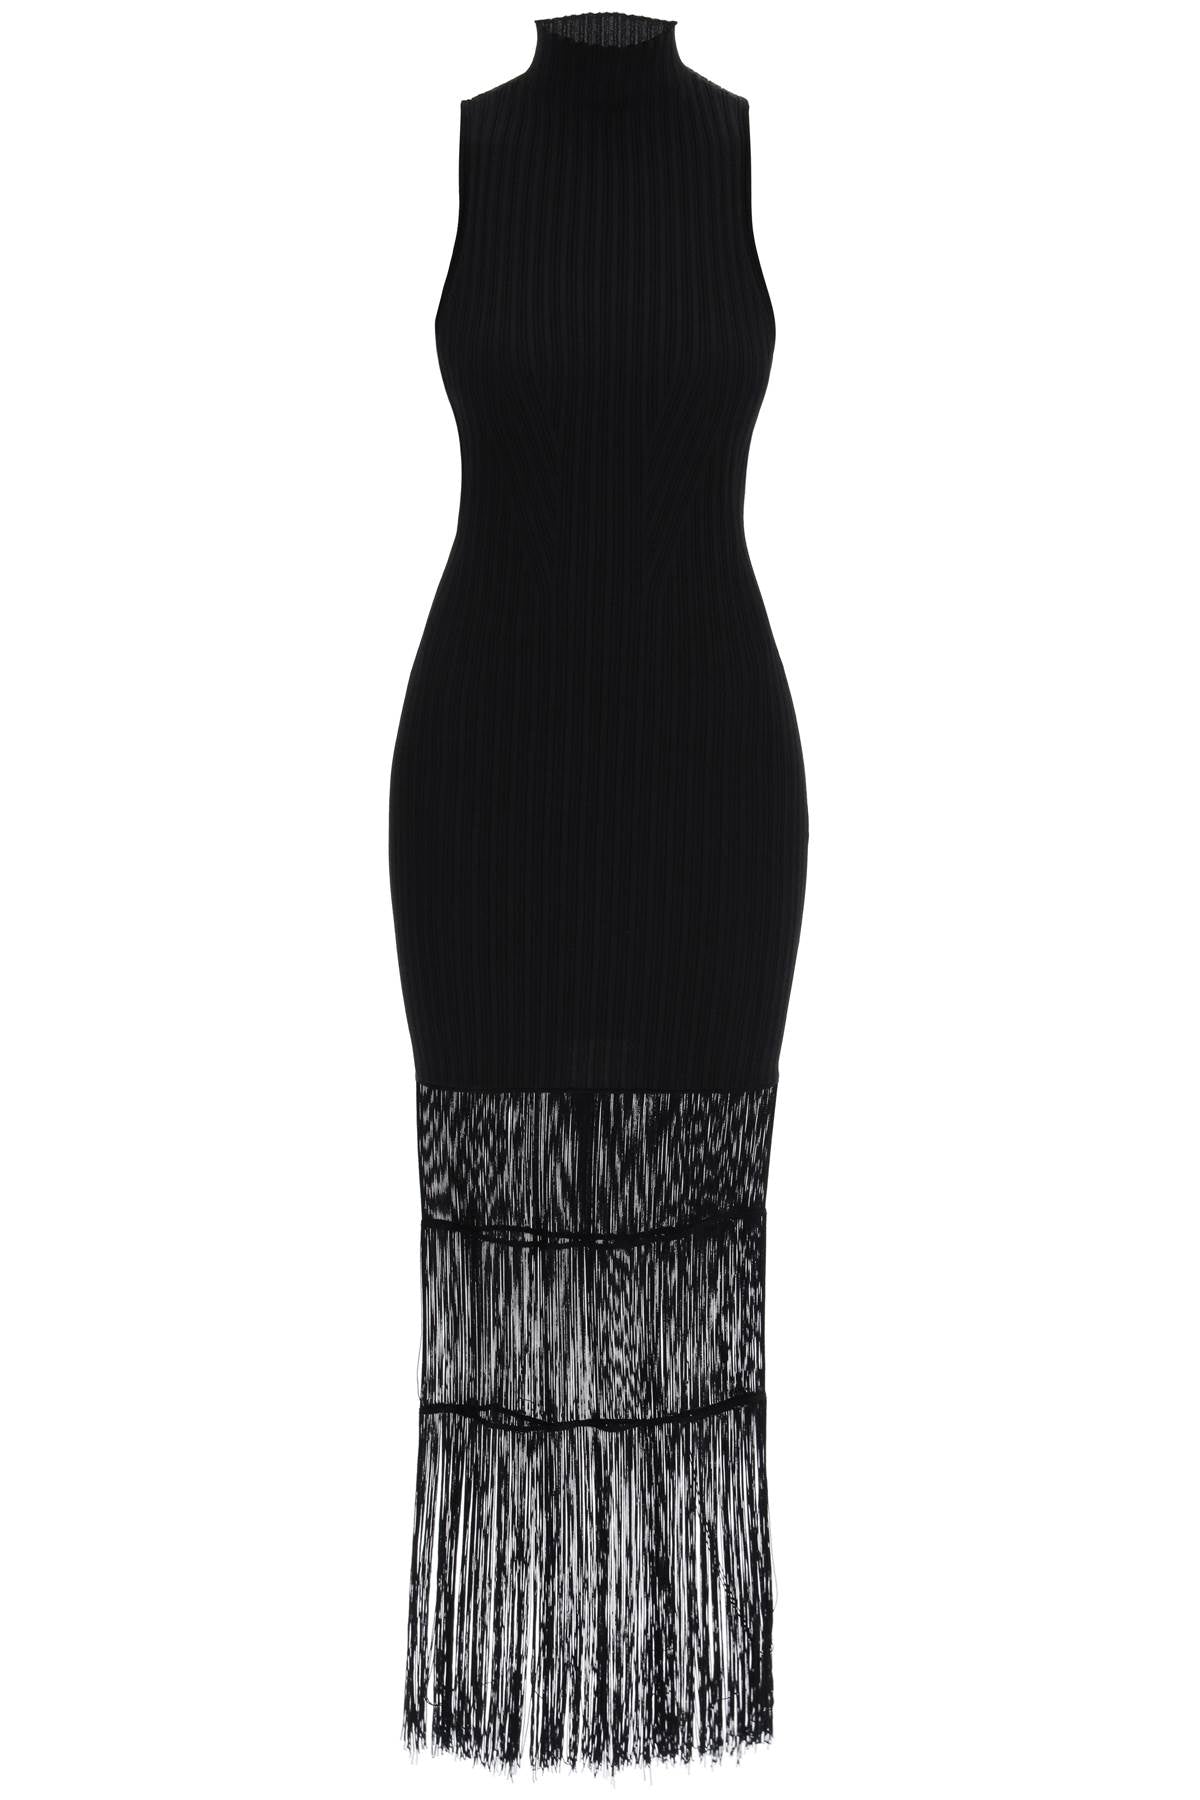 时尚黑色弹力织物拨边连衣裙 - KHAITE设计